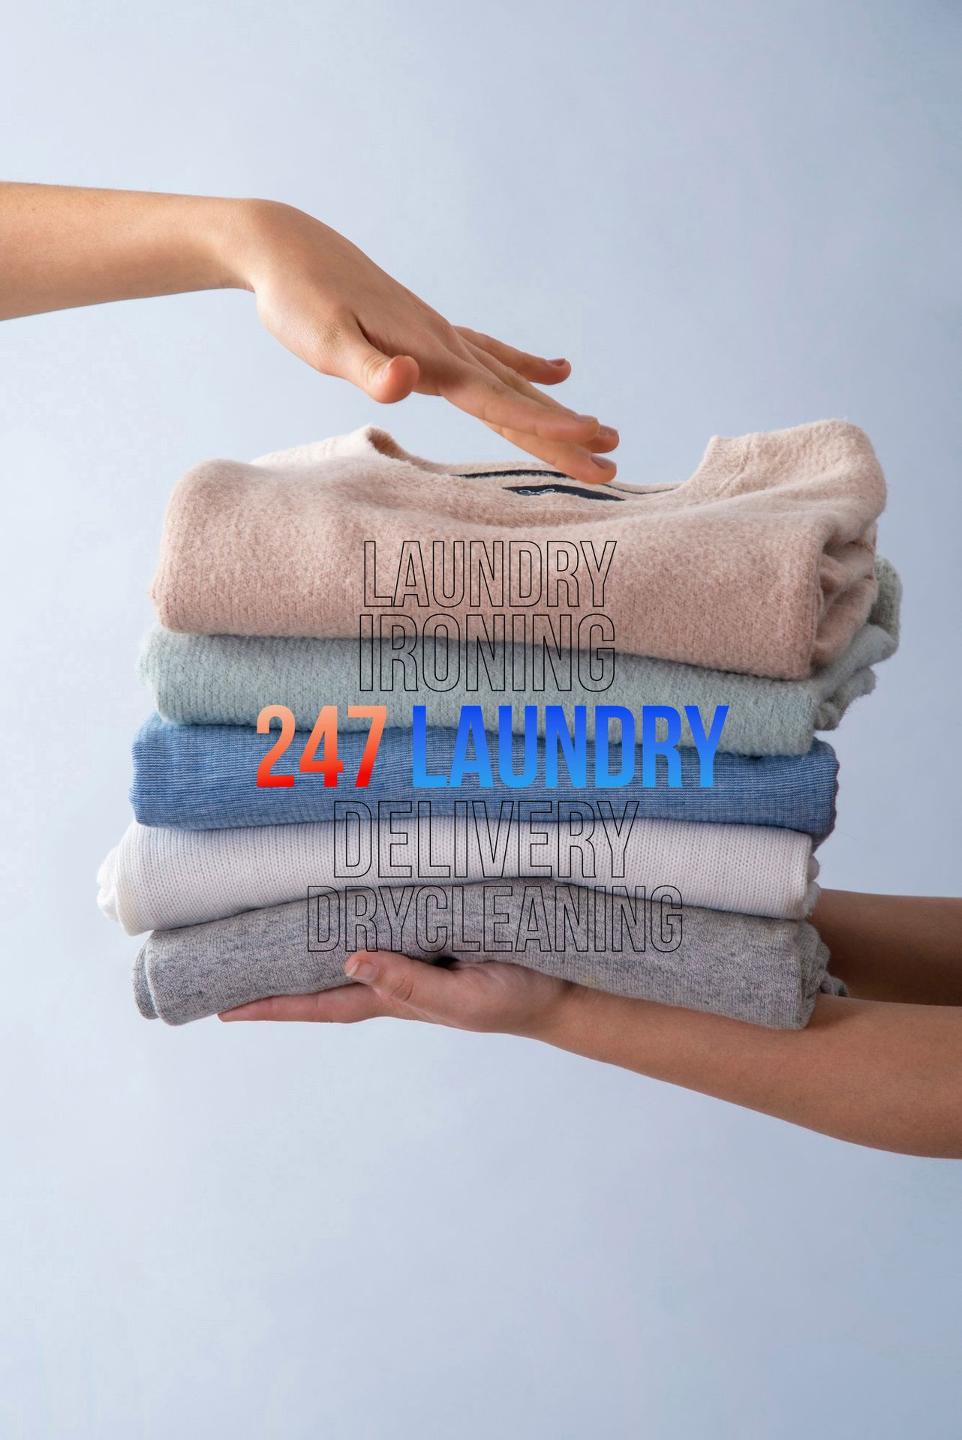 Dịch Vụ Giặt Ủi Lấy Liền | Giặt Sấy Lấy Ngay | Đặt Online Giao Nhận Tận Nhà Tại TPHCM | Giặt Ủi 247